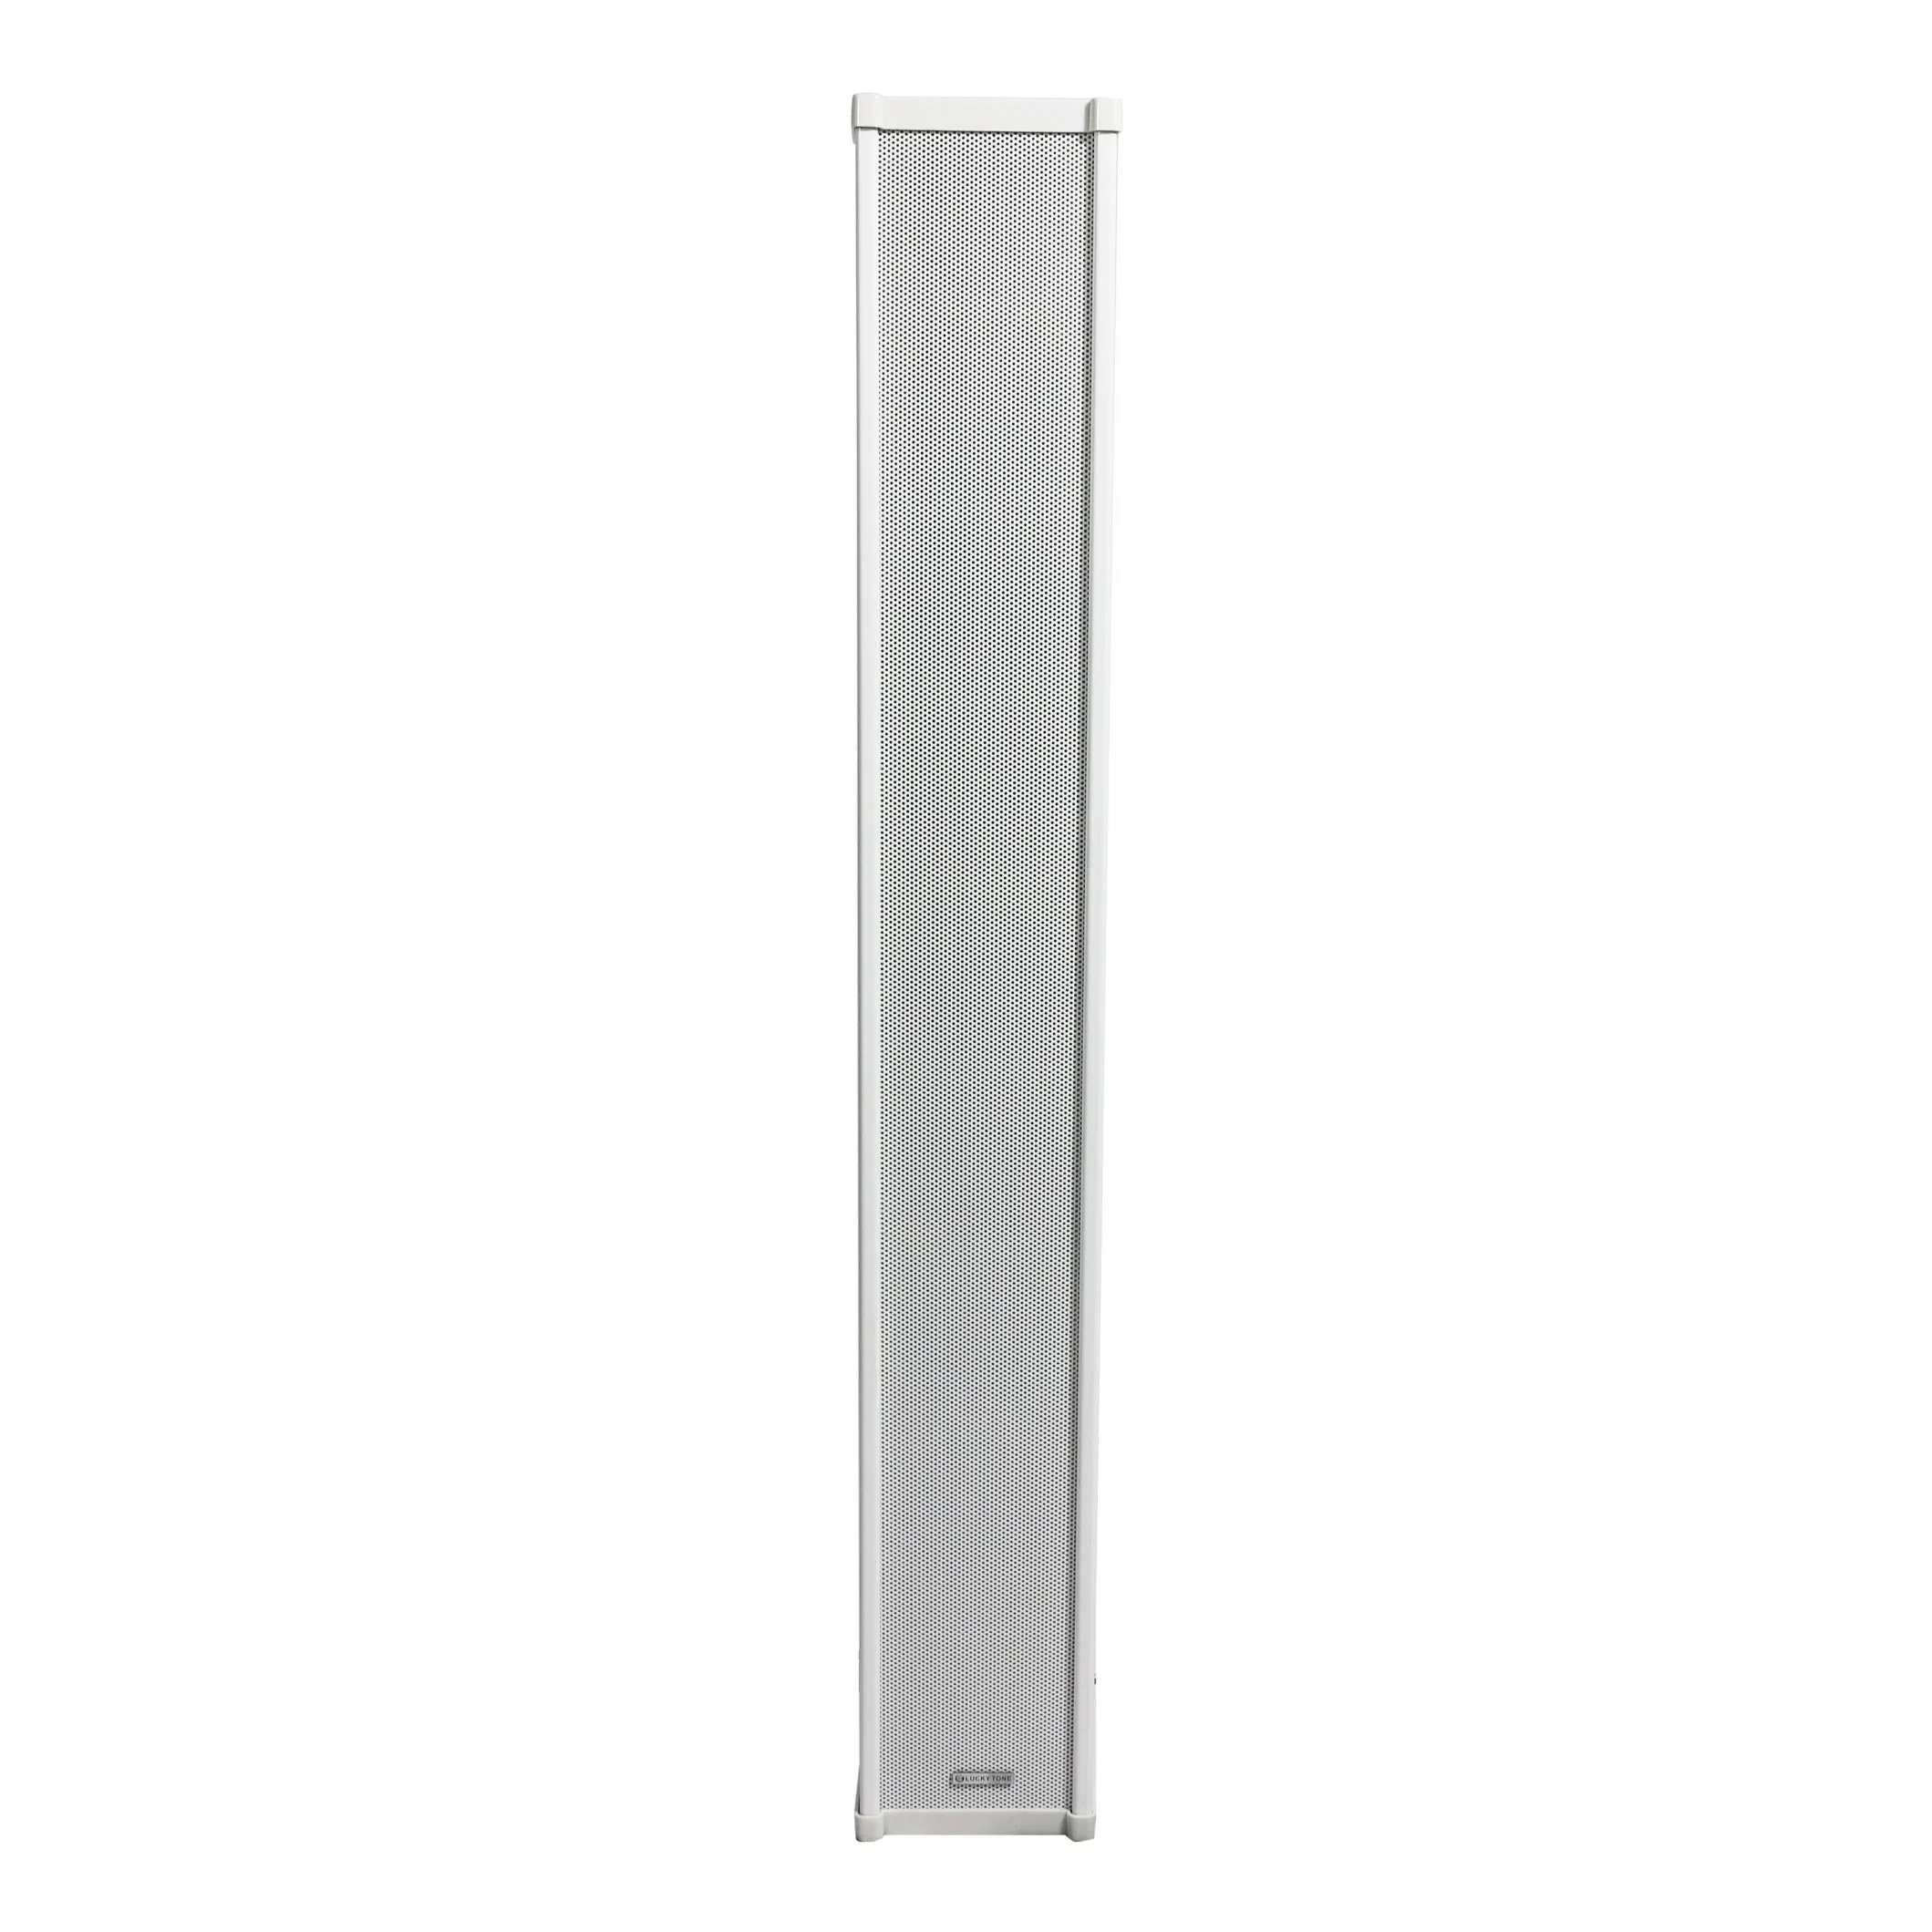 Lm-240 en la columna de la puerta de altavoz con cuerpo delgado para producir los efectos de la buena música de montaje en pared interiores o exteriores de los altavoces de columna40W.